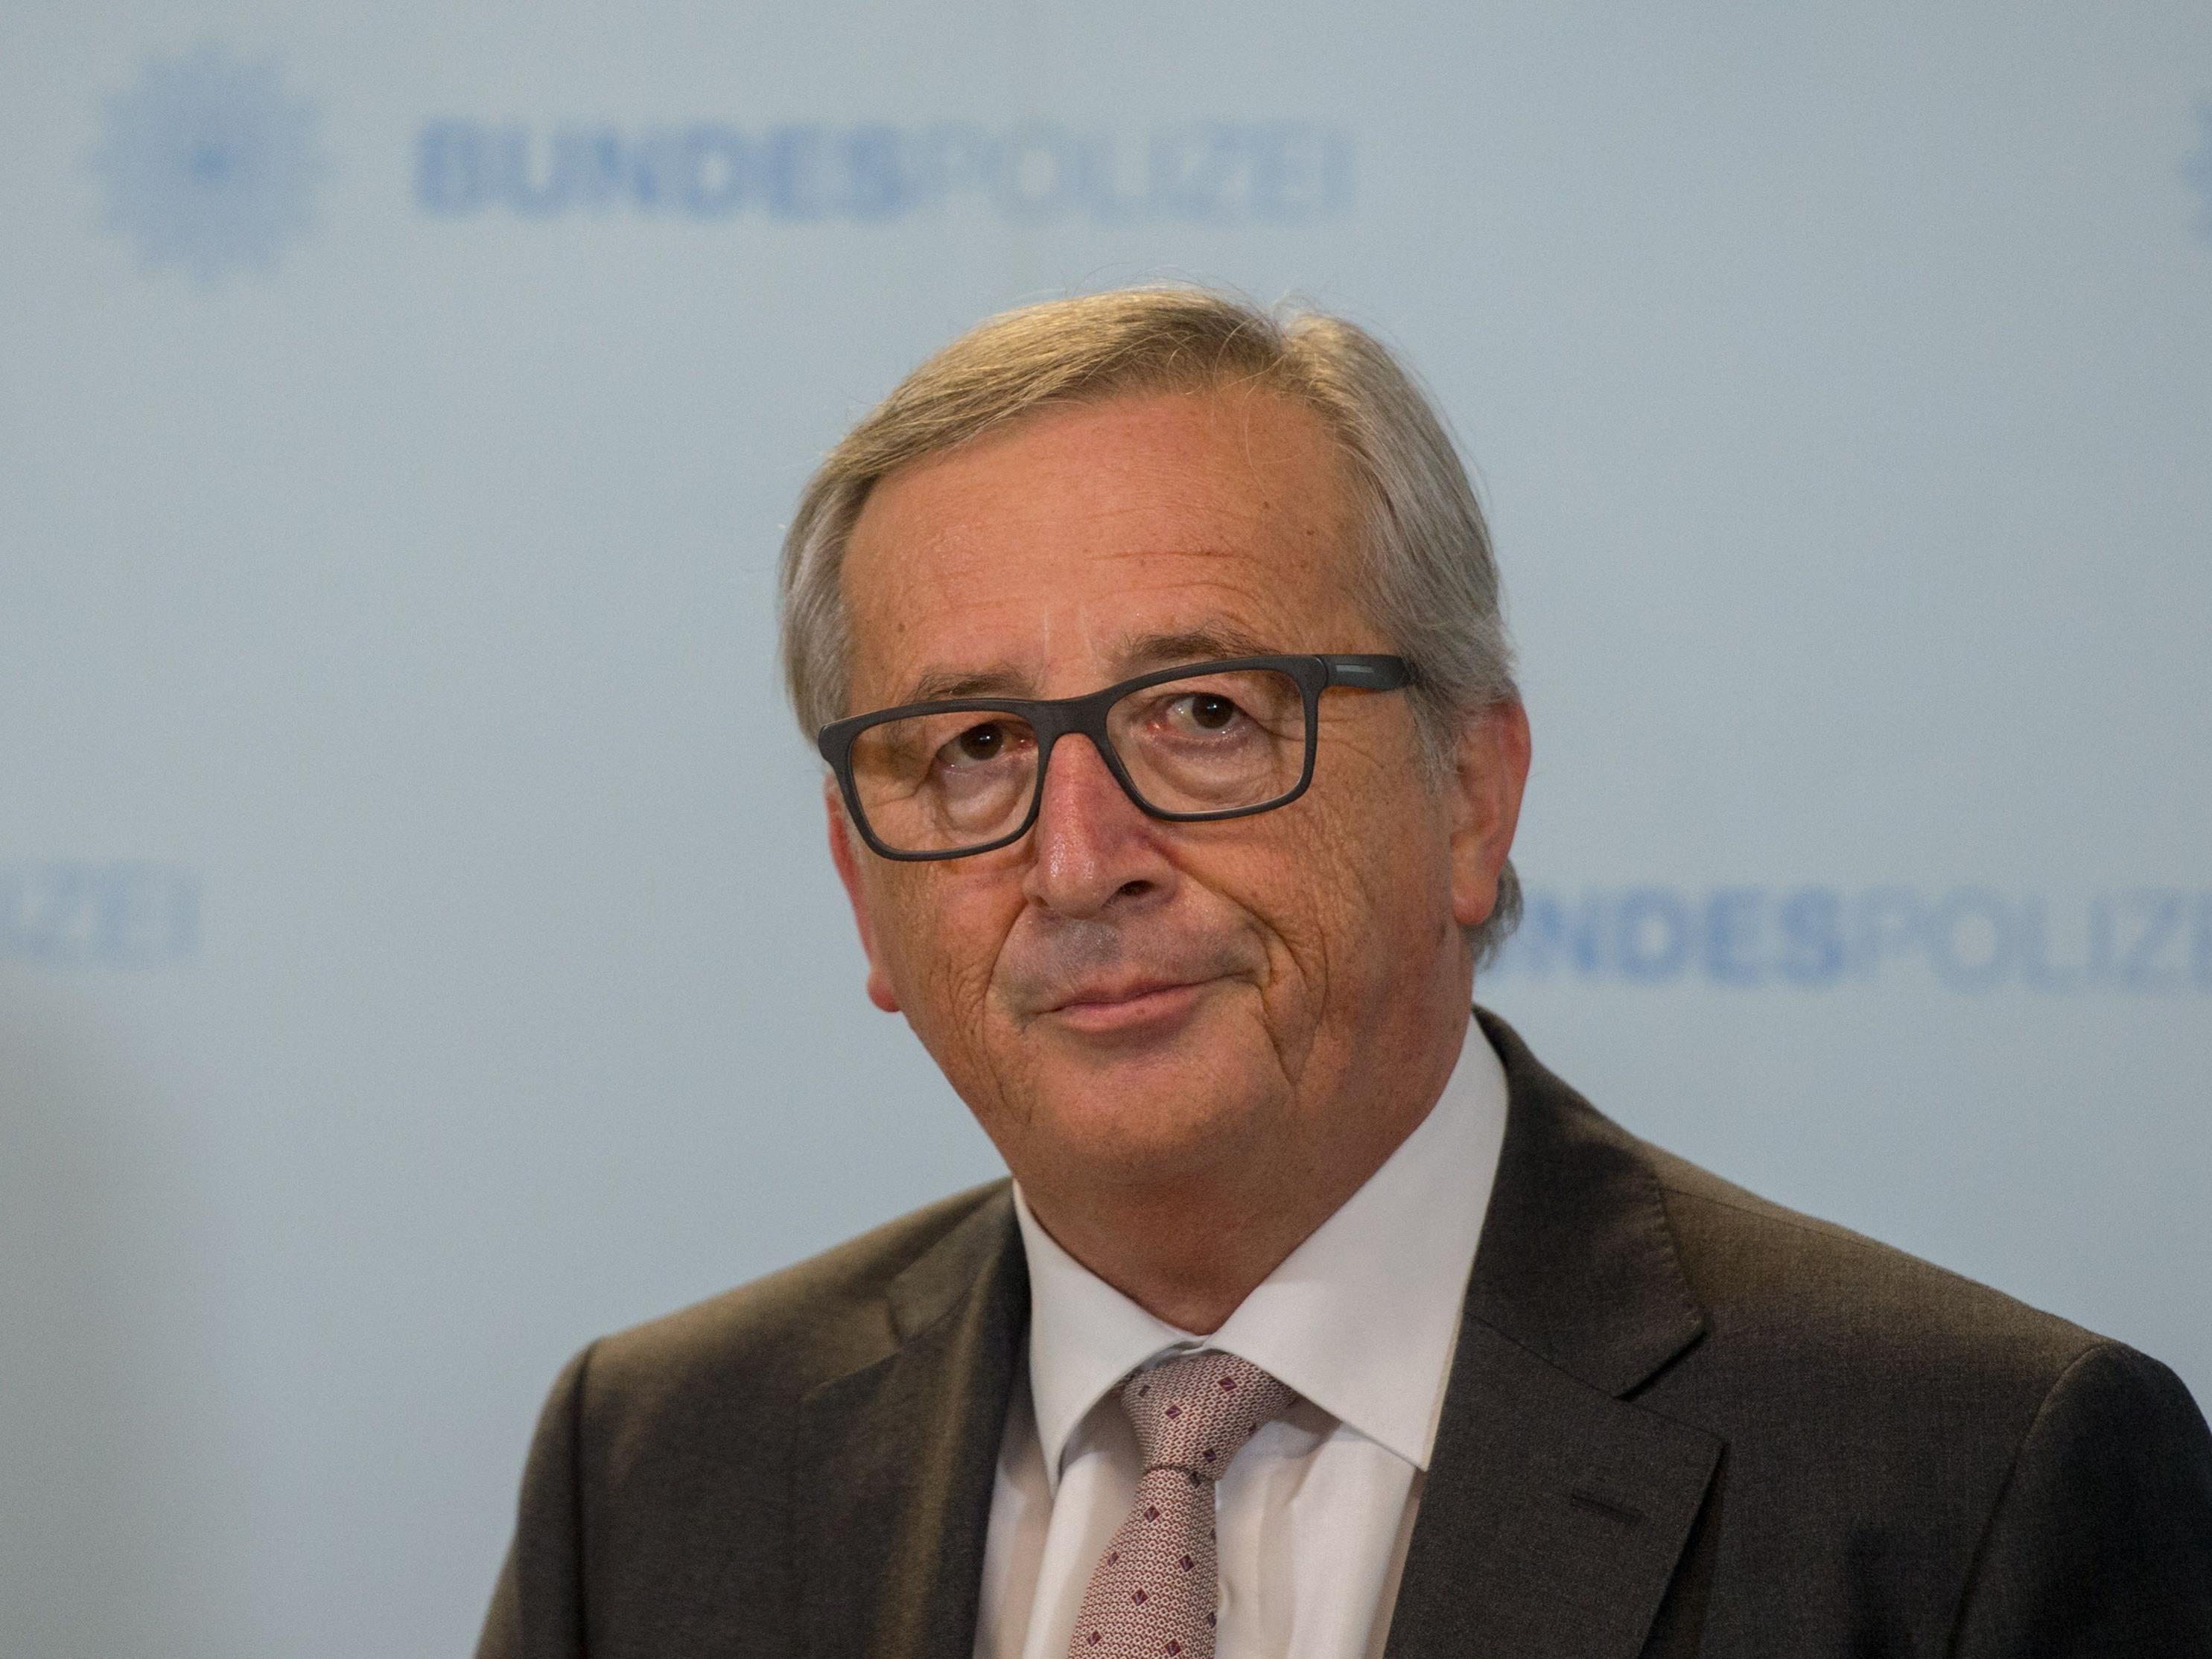 Wer hätte das gedacht? Auch im Land von Jean-Claude Juncker gibt es Steuersünder.